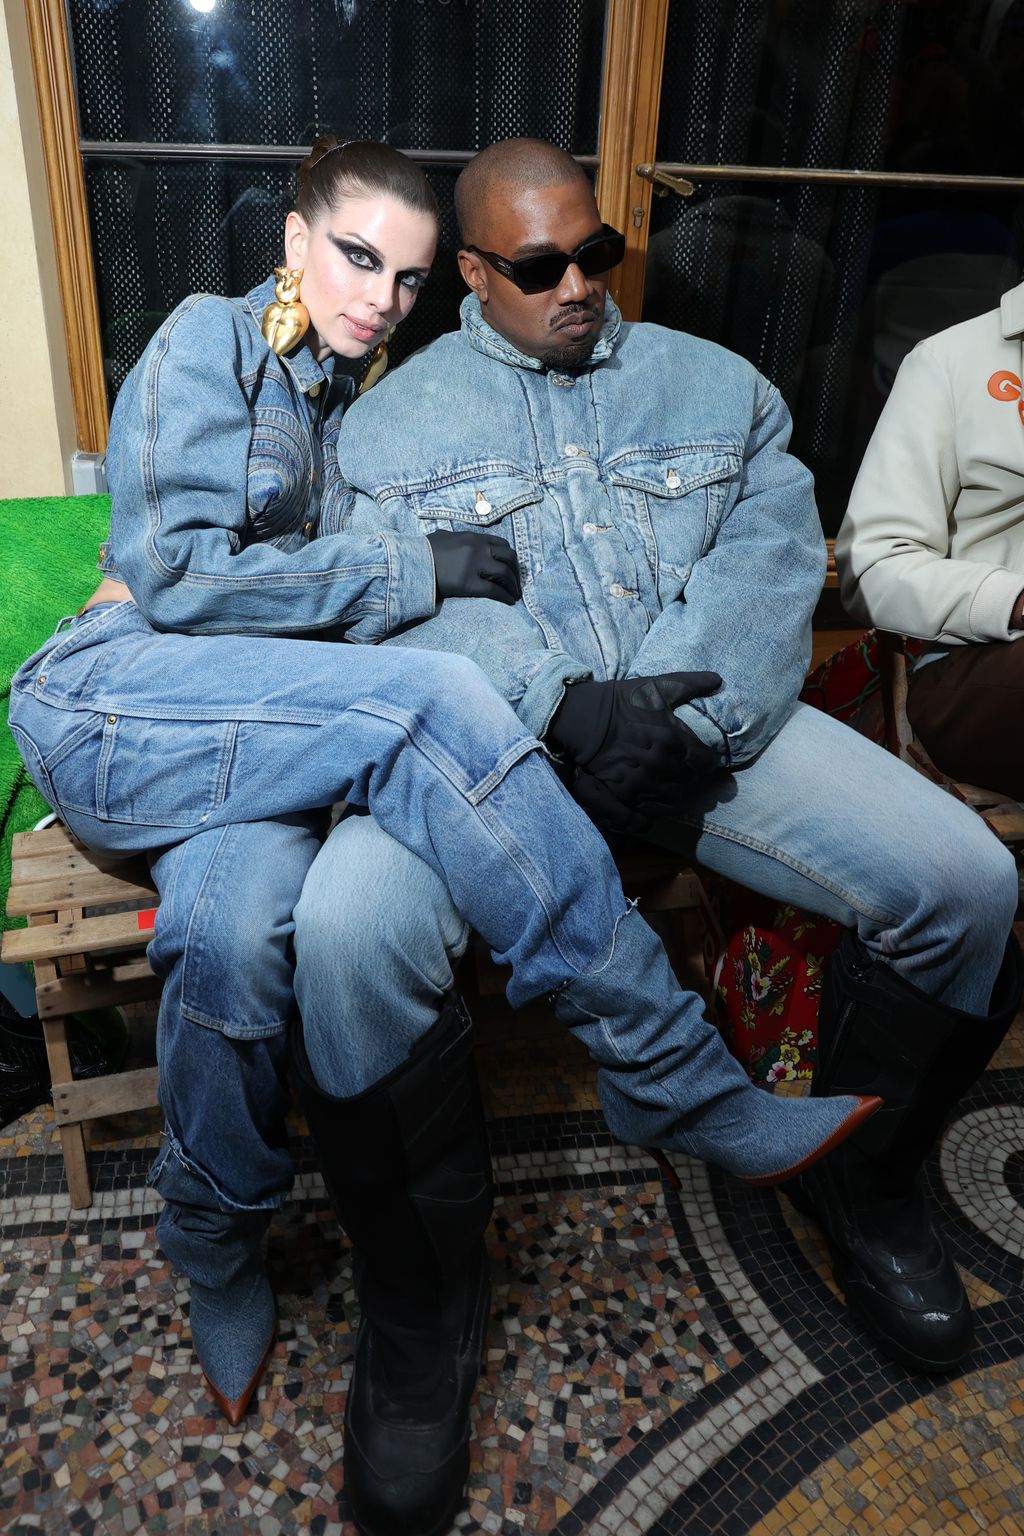 Kanye West dan Julia Fox di fashion show Kenzo Paris Fashion Week.